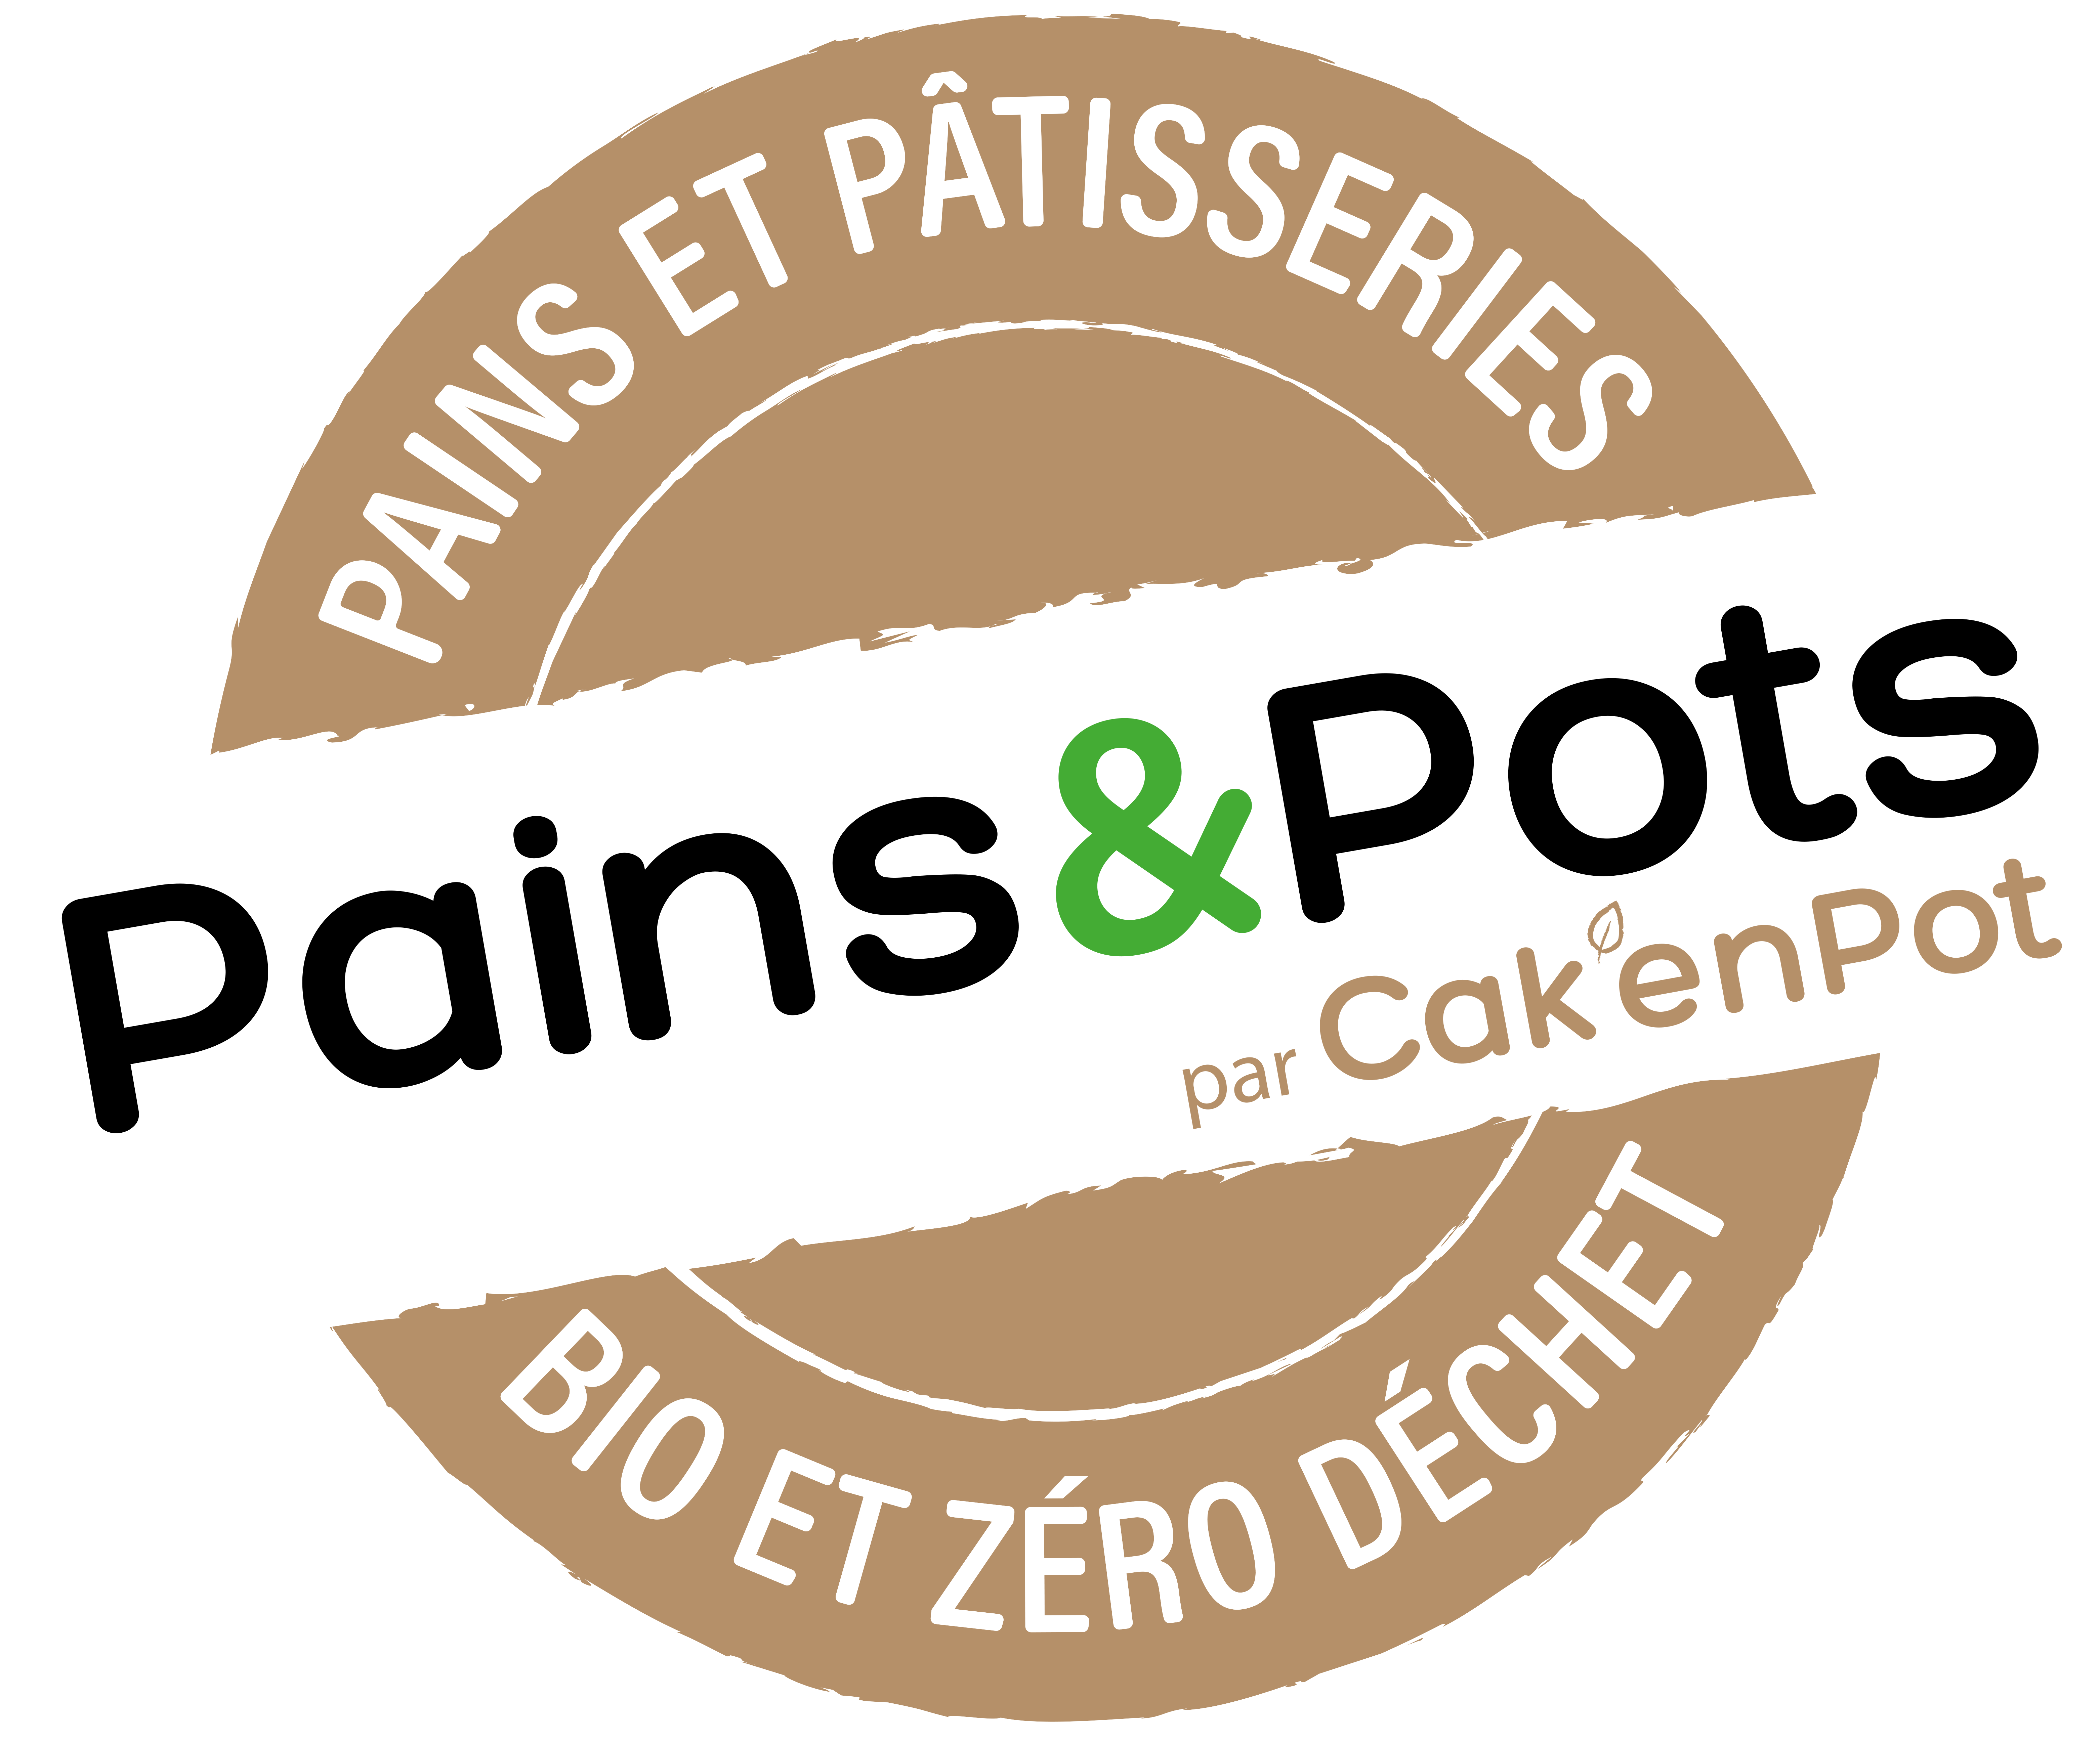 Pains & Pots - Cak'En Pot 2